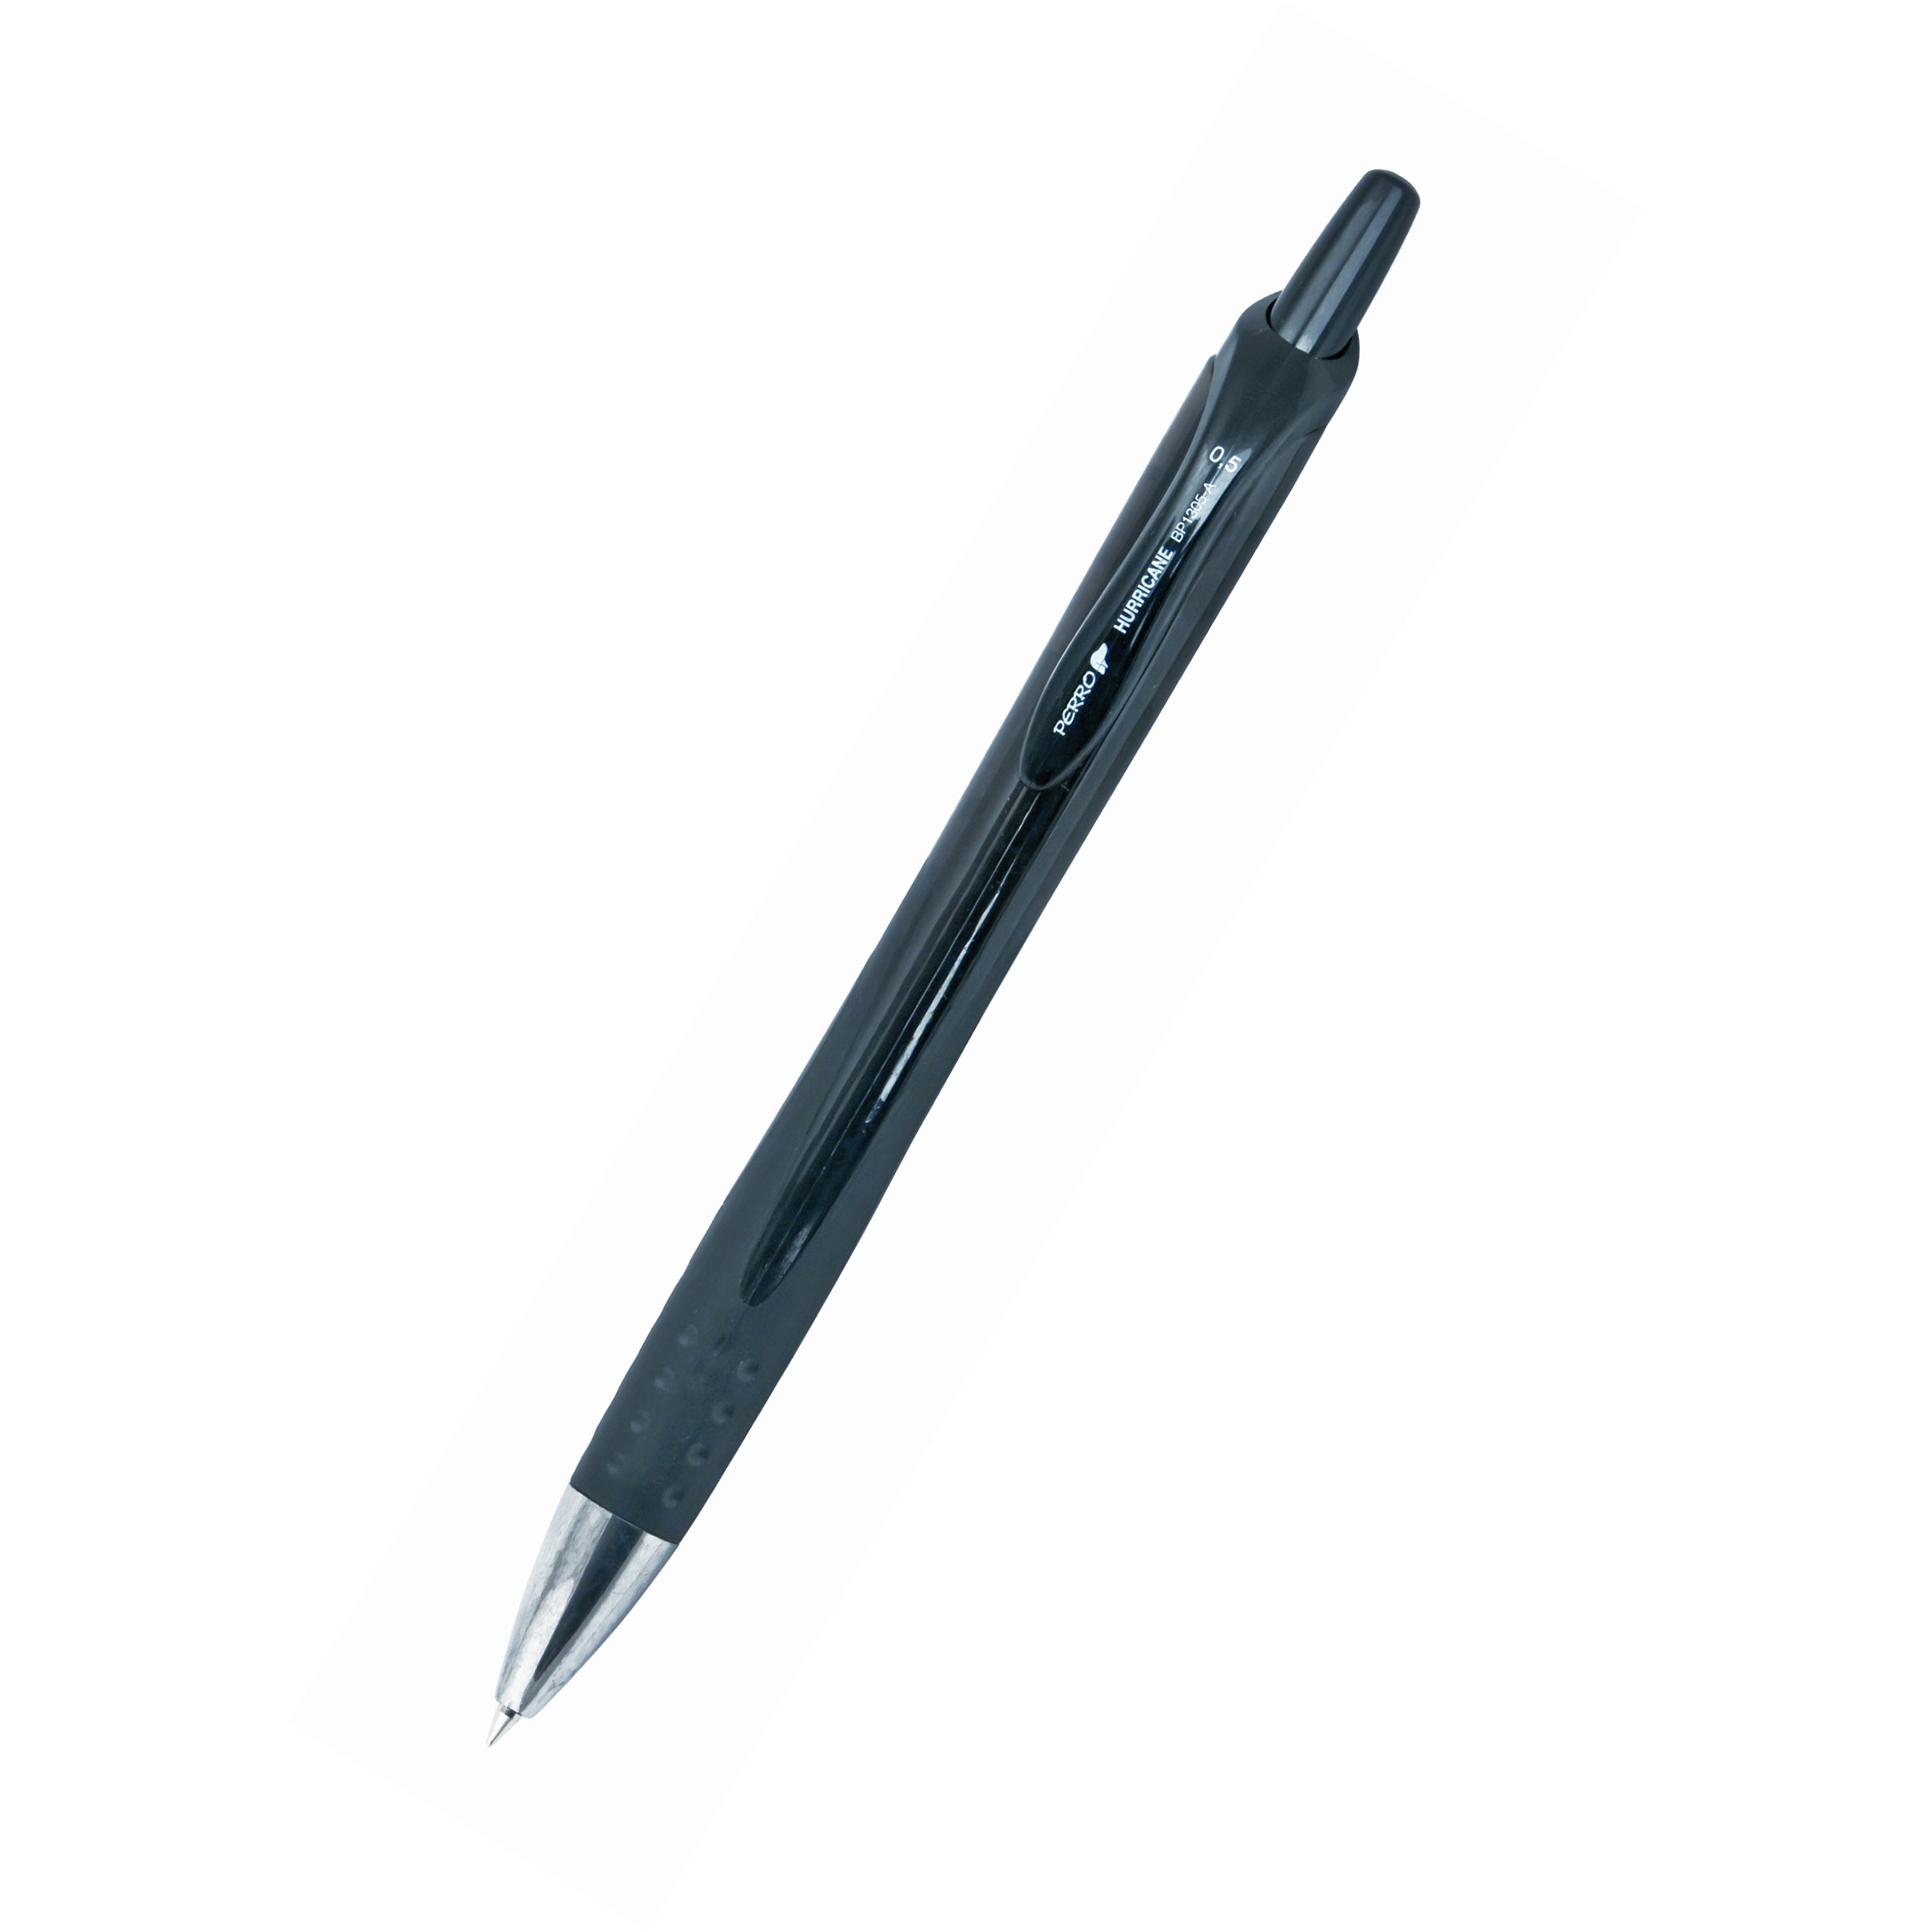 Kuličkové pero Perro Hurricane, 0,5mm, černá